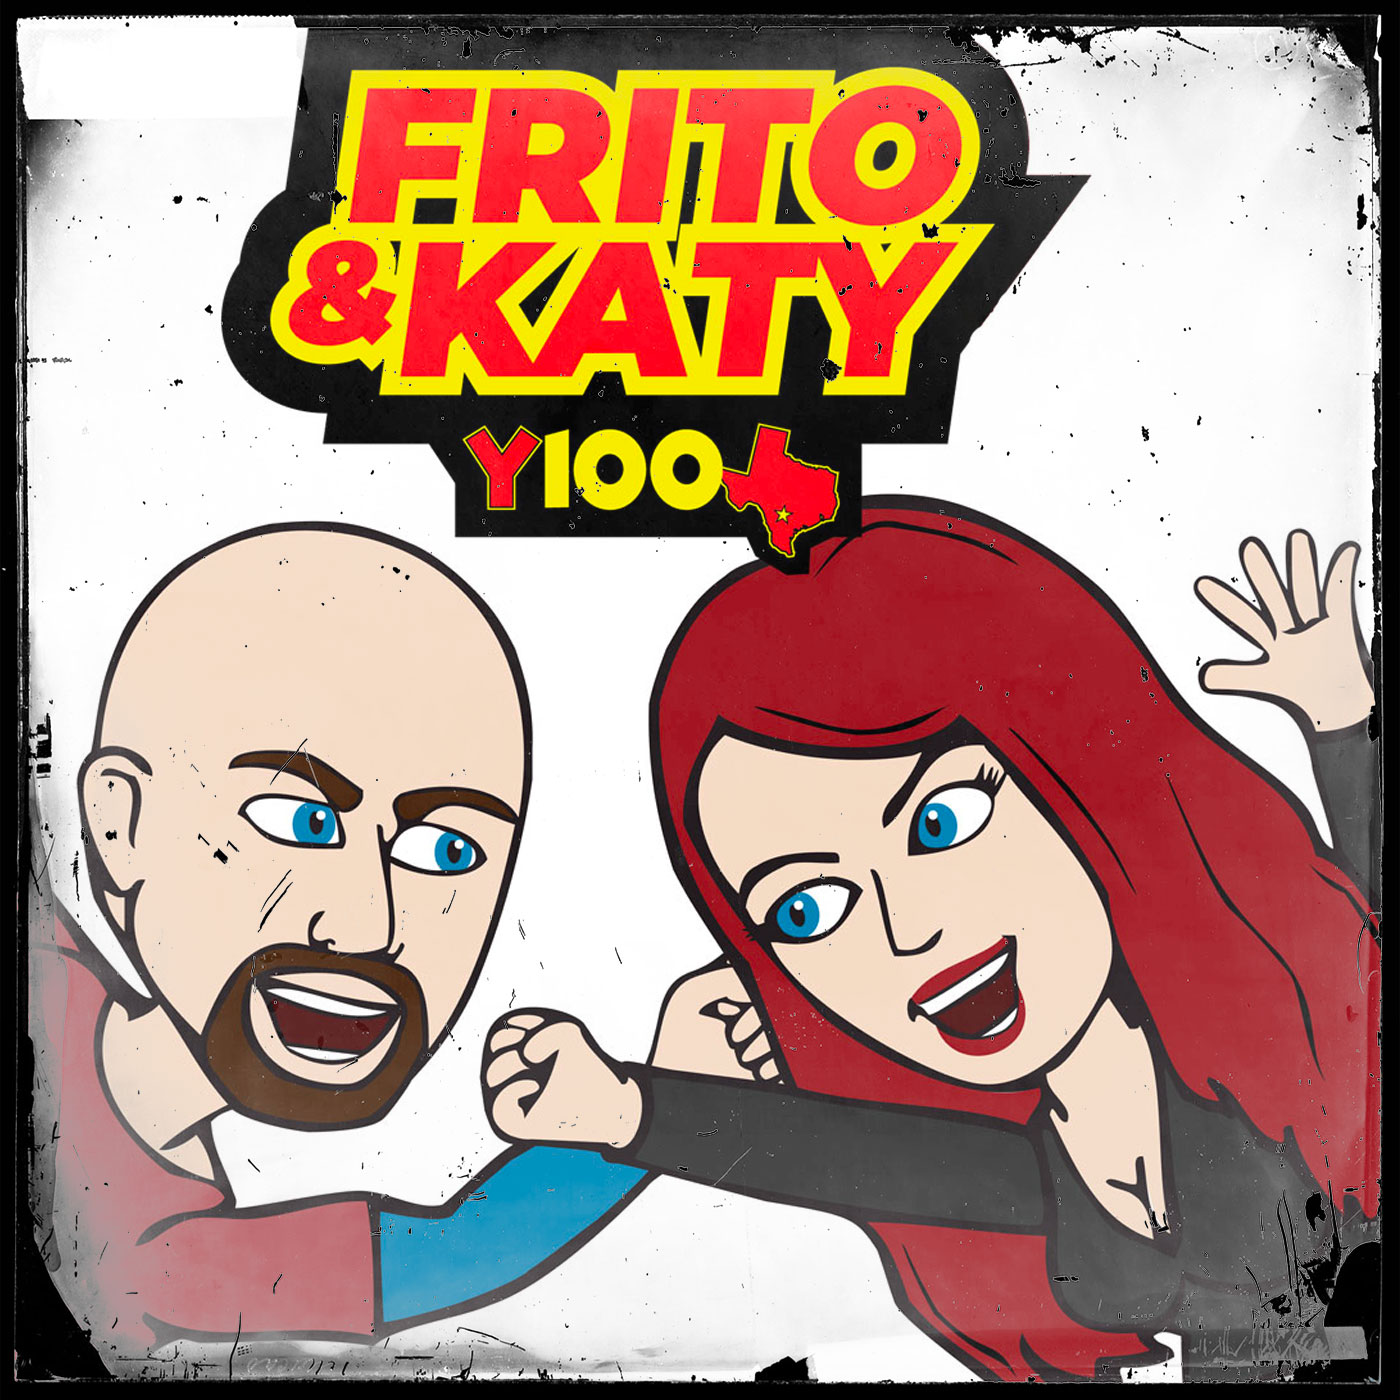 Y100 Frito & Katy Full Show Recap